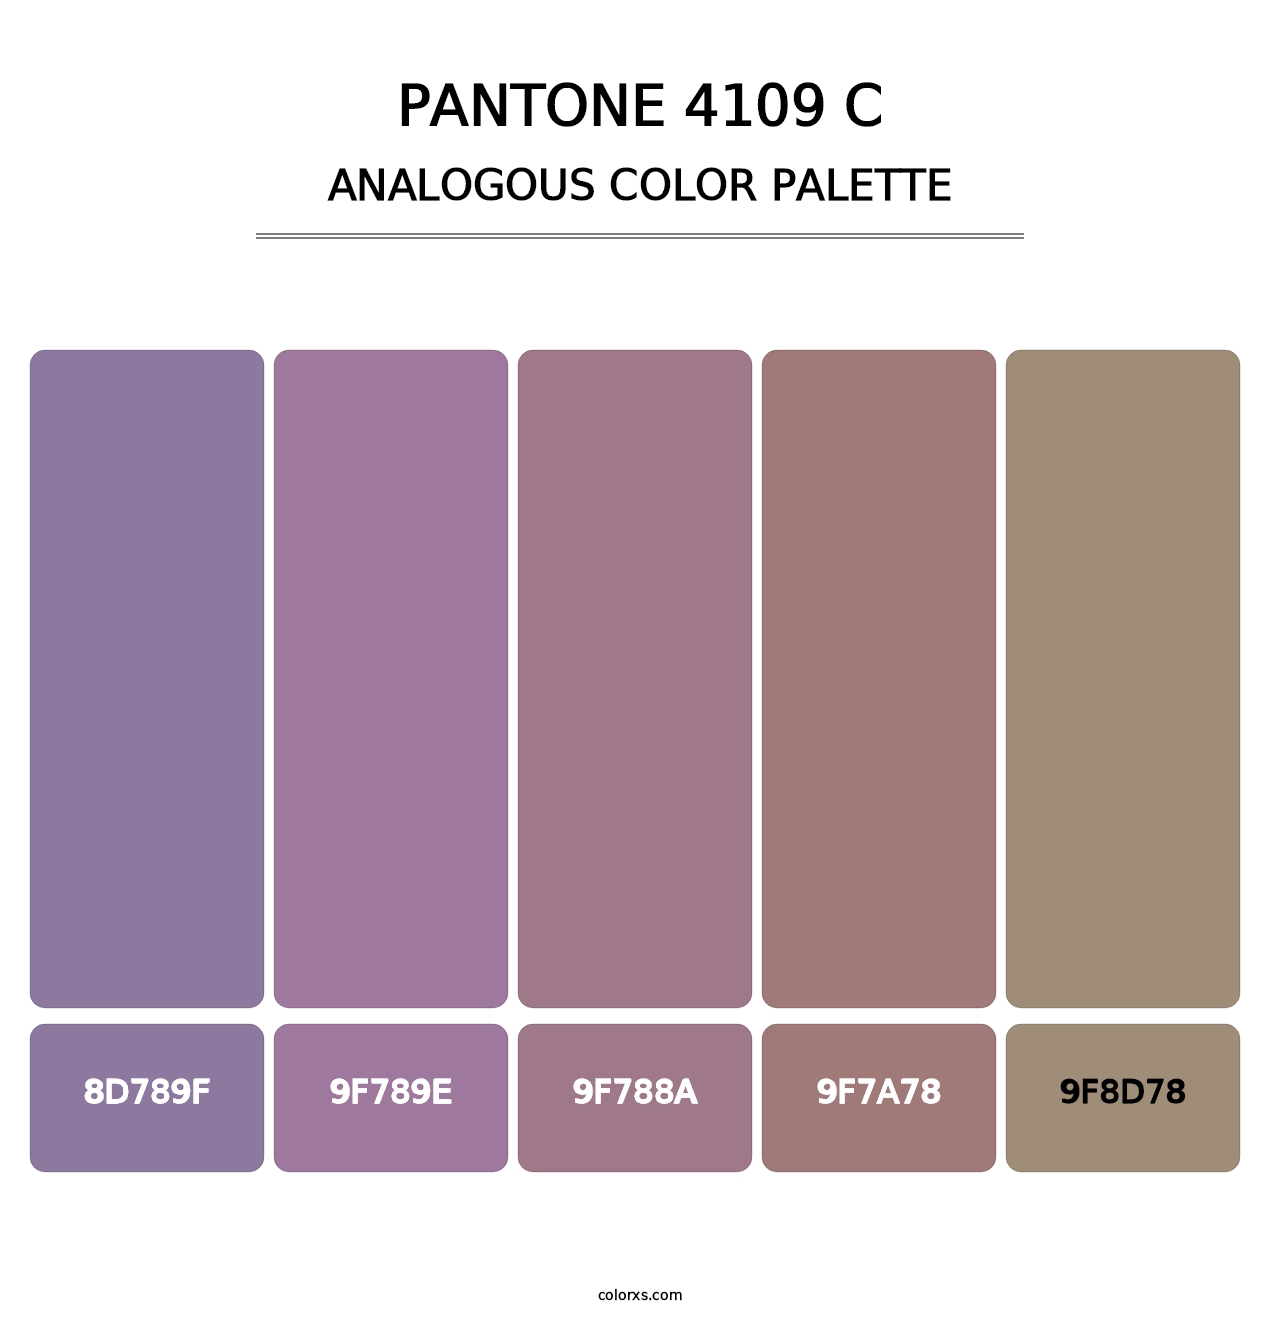 PANTONE 4109 C - Analogous Color Palette